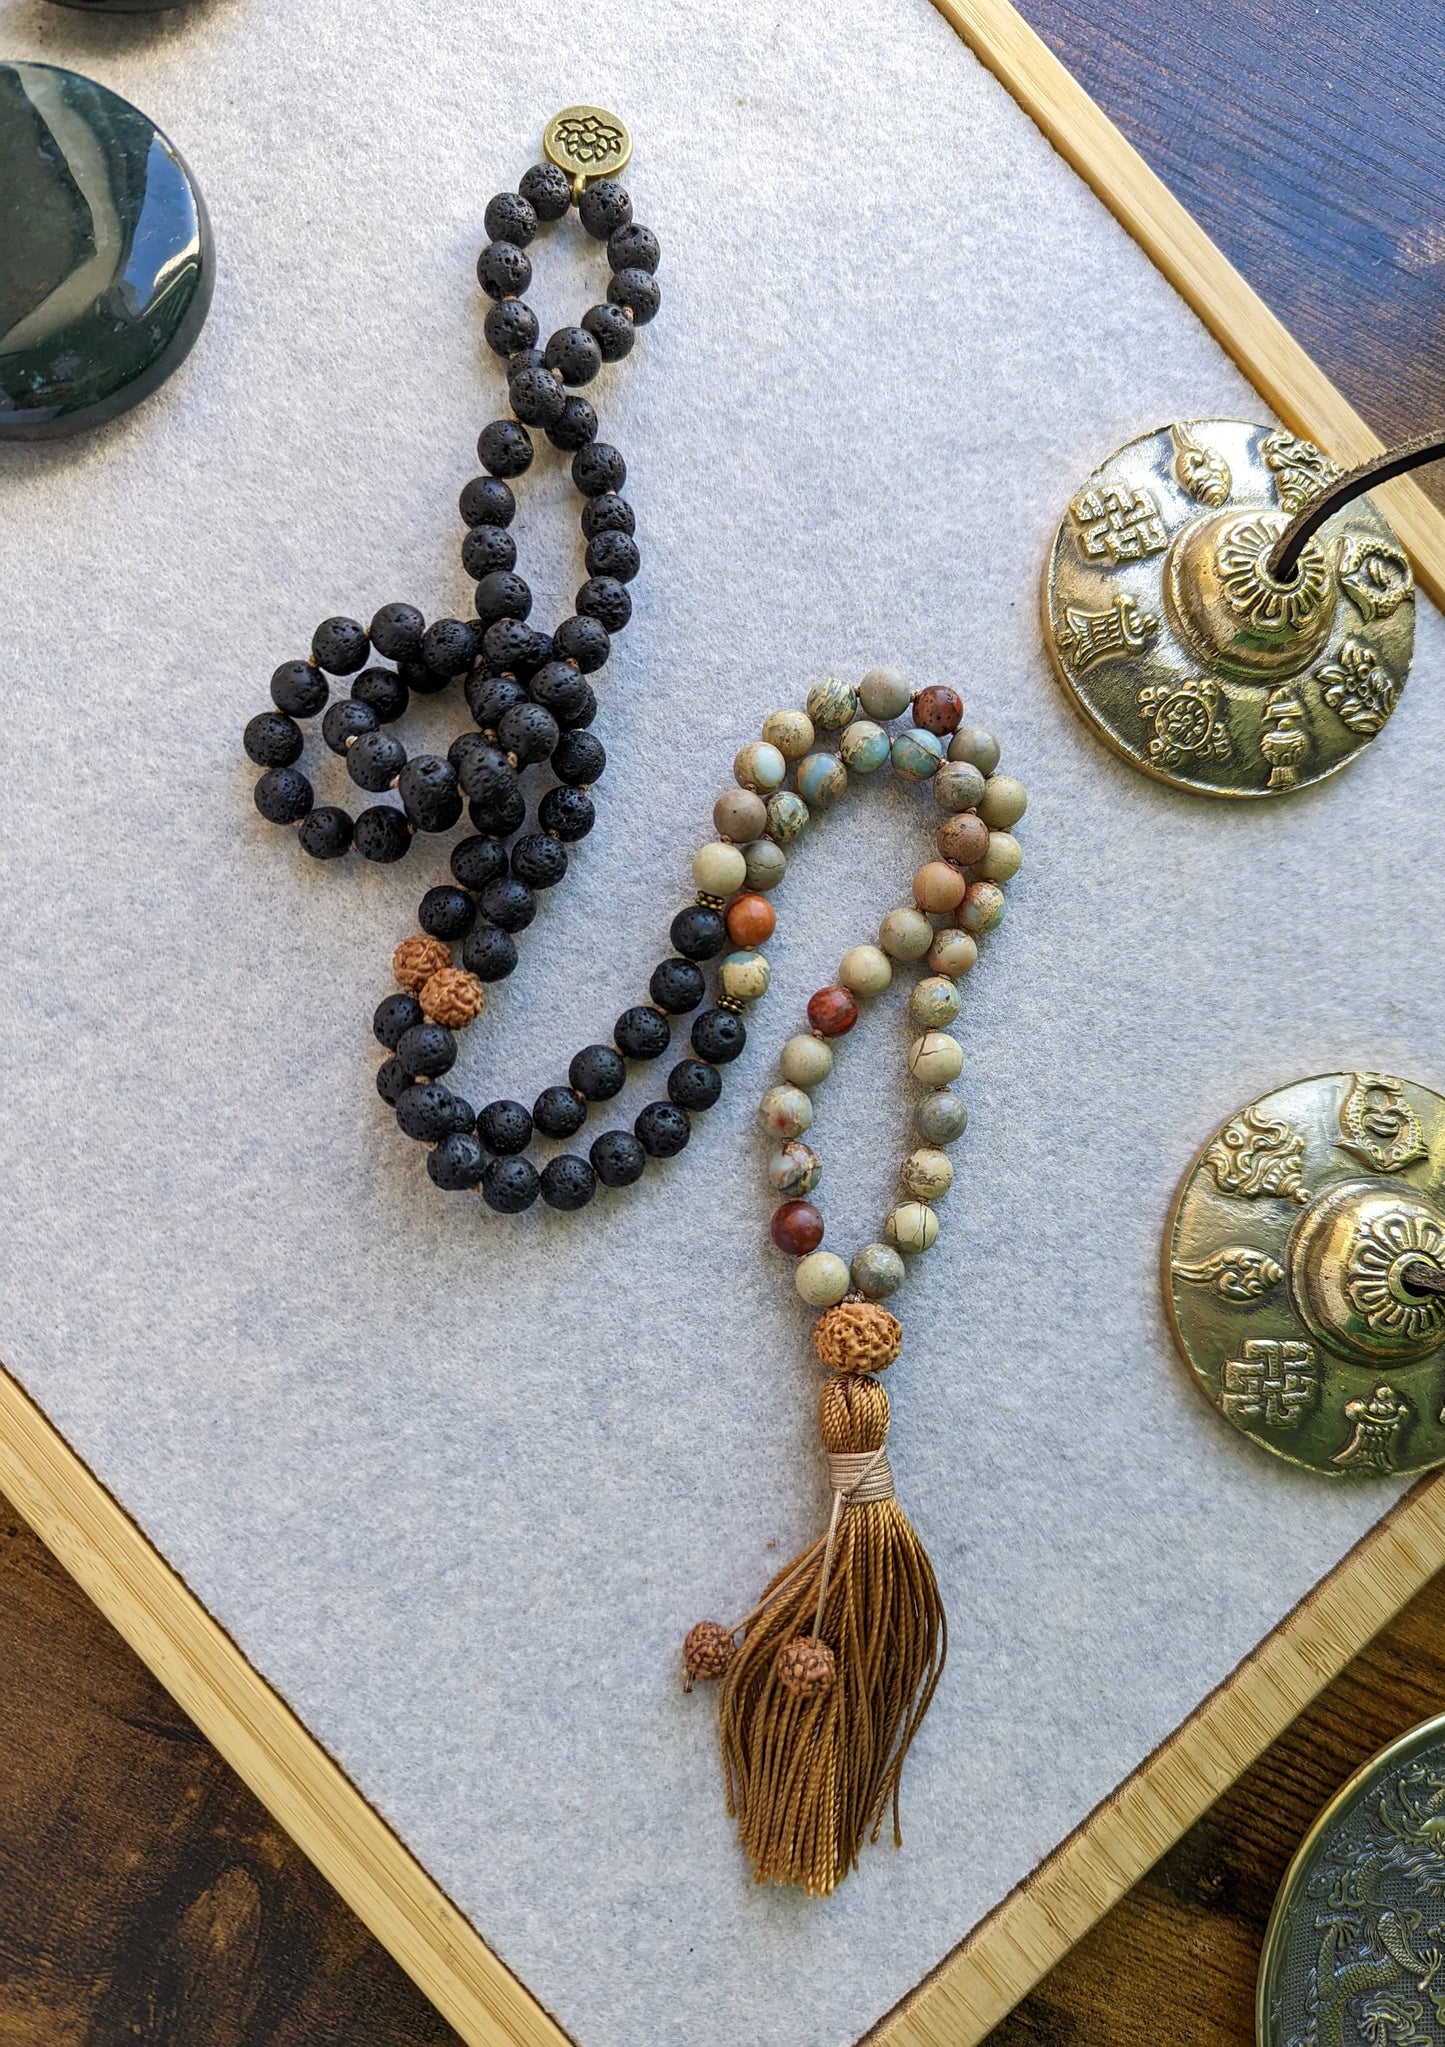 Lava Rock Mala, Buddhist Prayer Beads, 108 Japa Mala, Reiki Charged Beads, Self-Care Gift